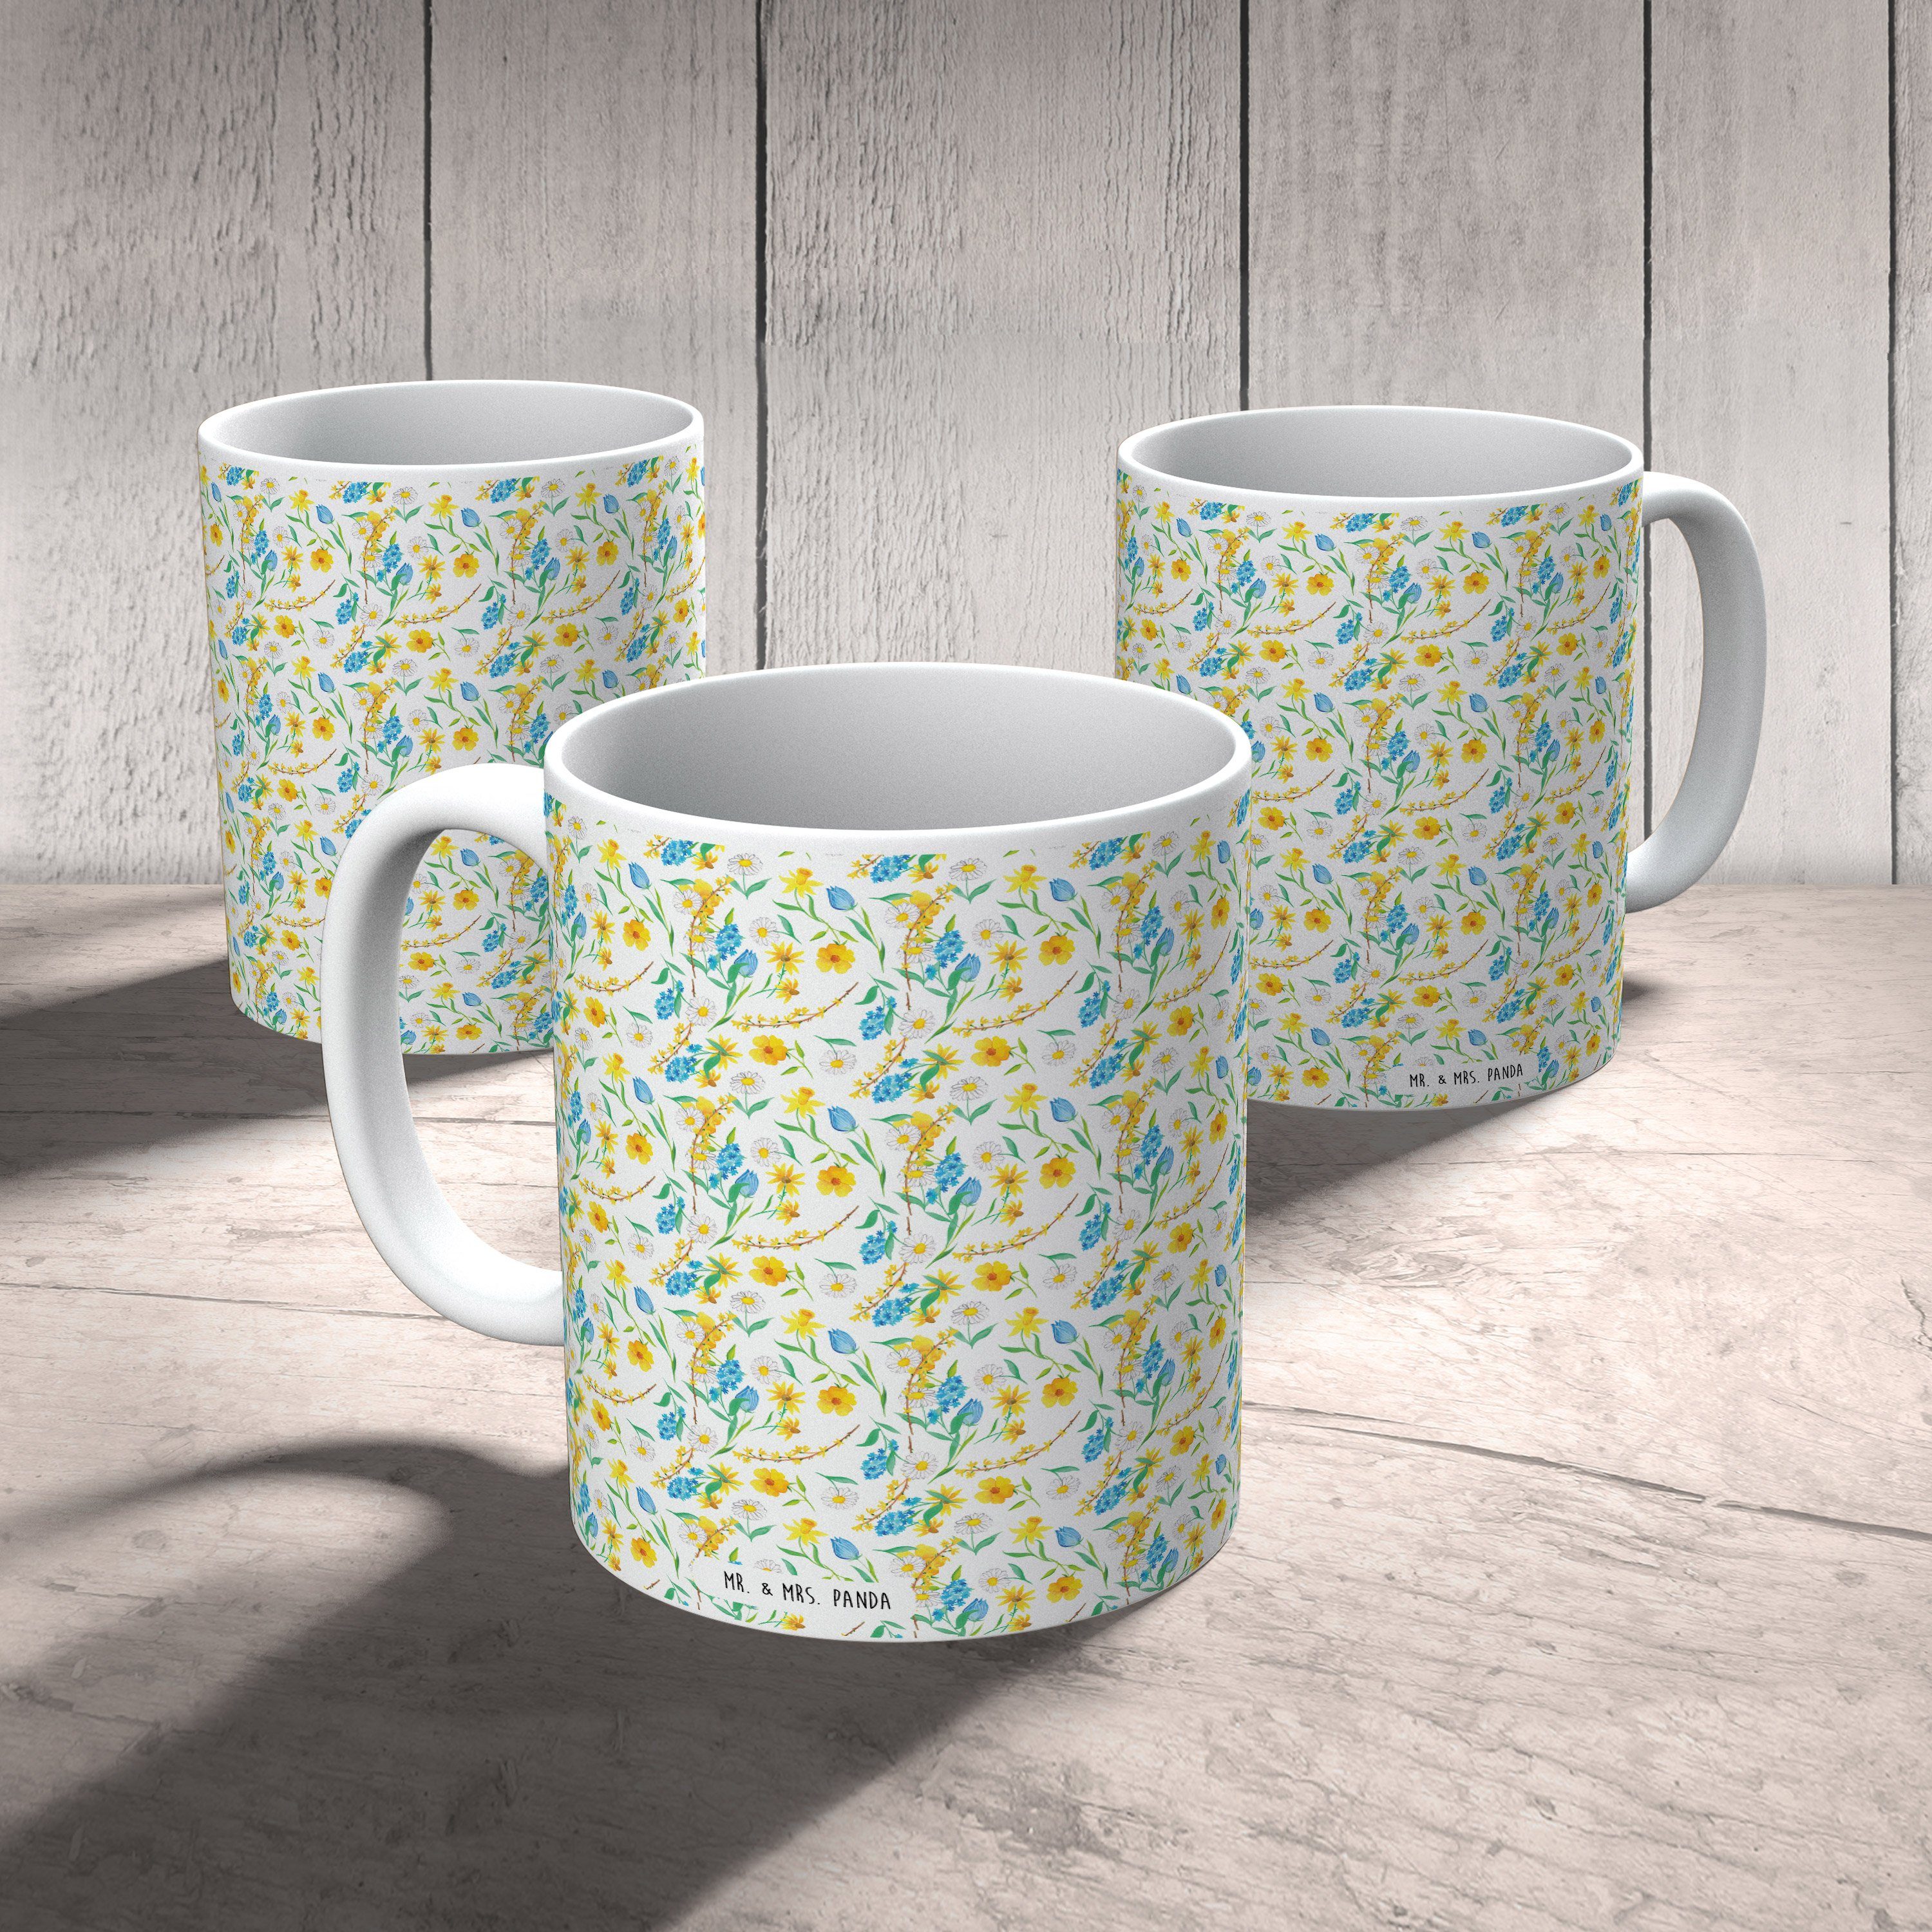 Mr. & Mrs. Panda Tasse Frühlingserwachen Design - Weiß - Geschenk, Teetasse, Blumenmädchen, Keramik